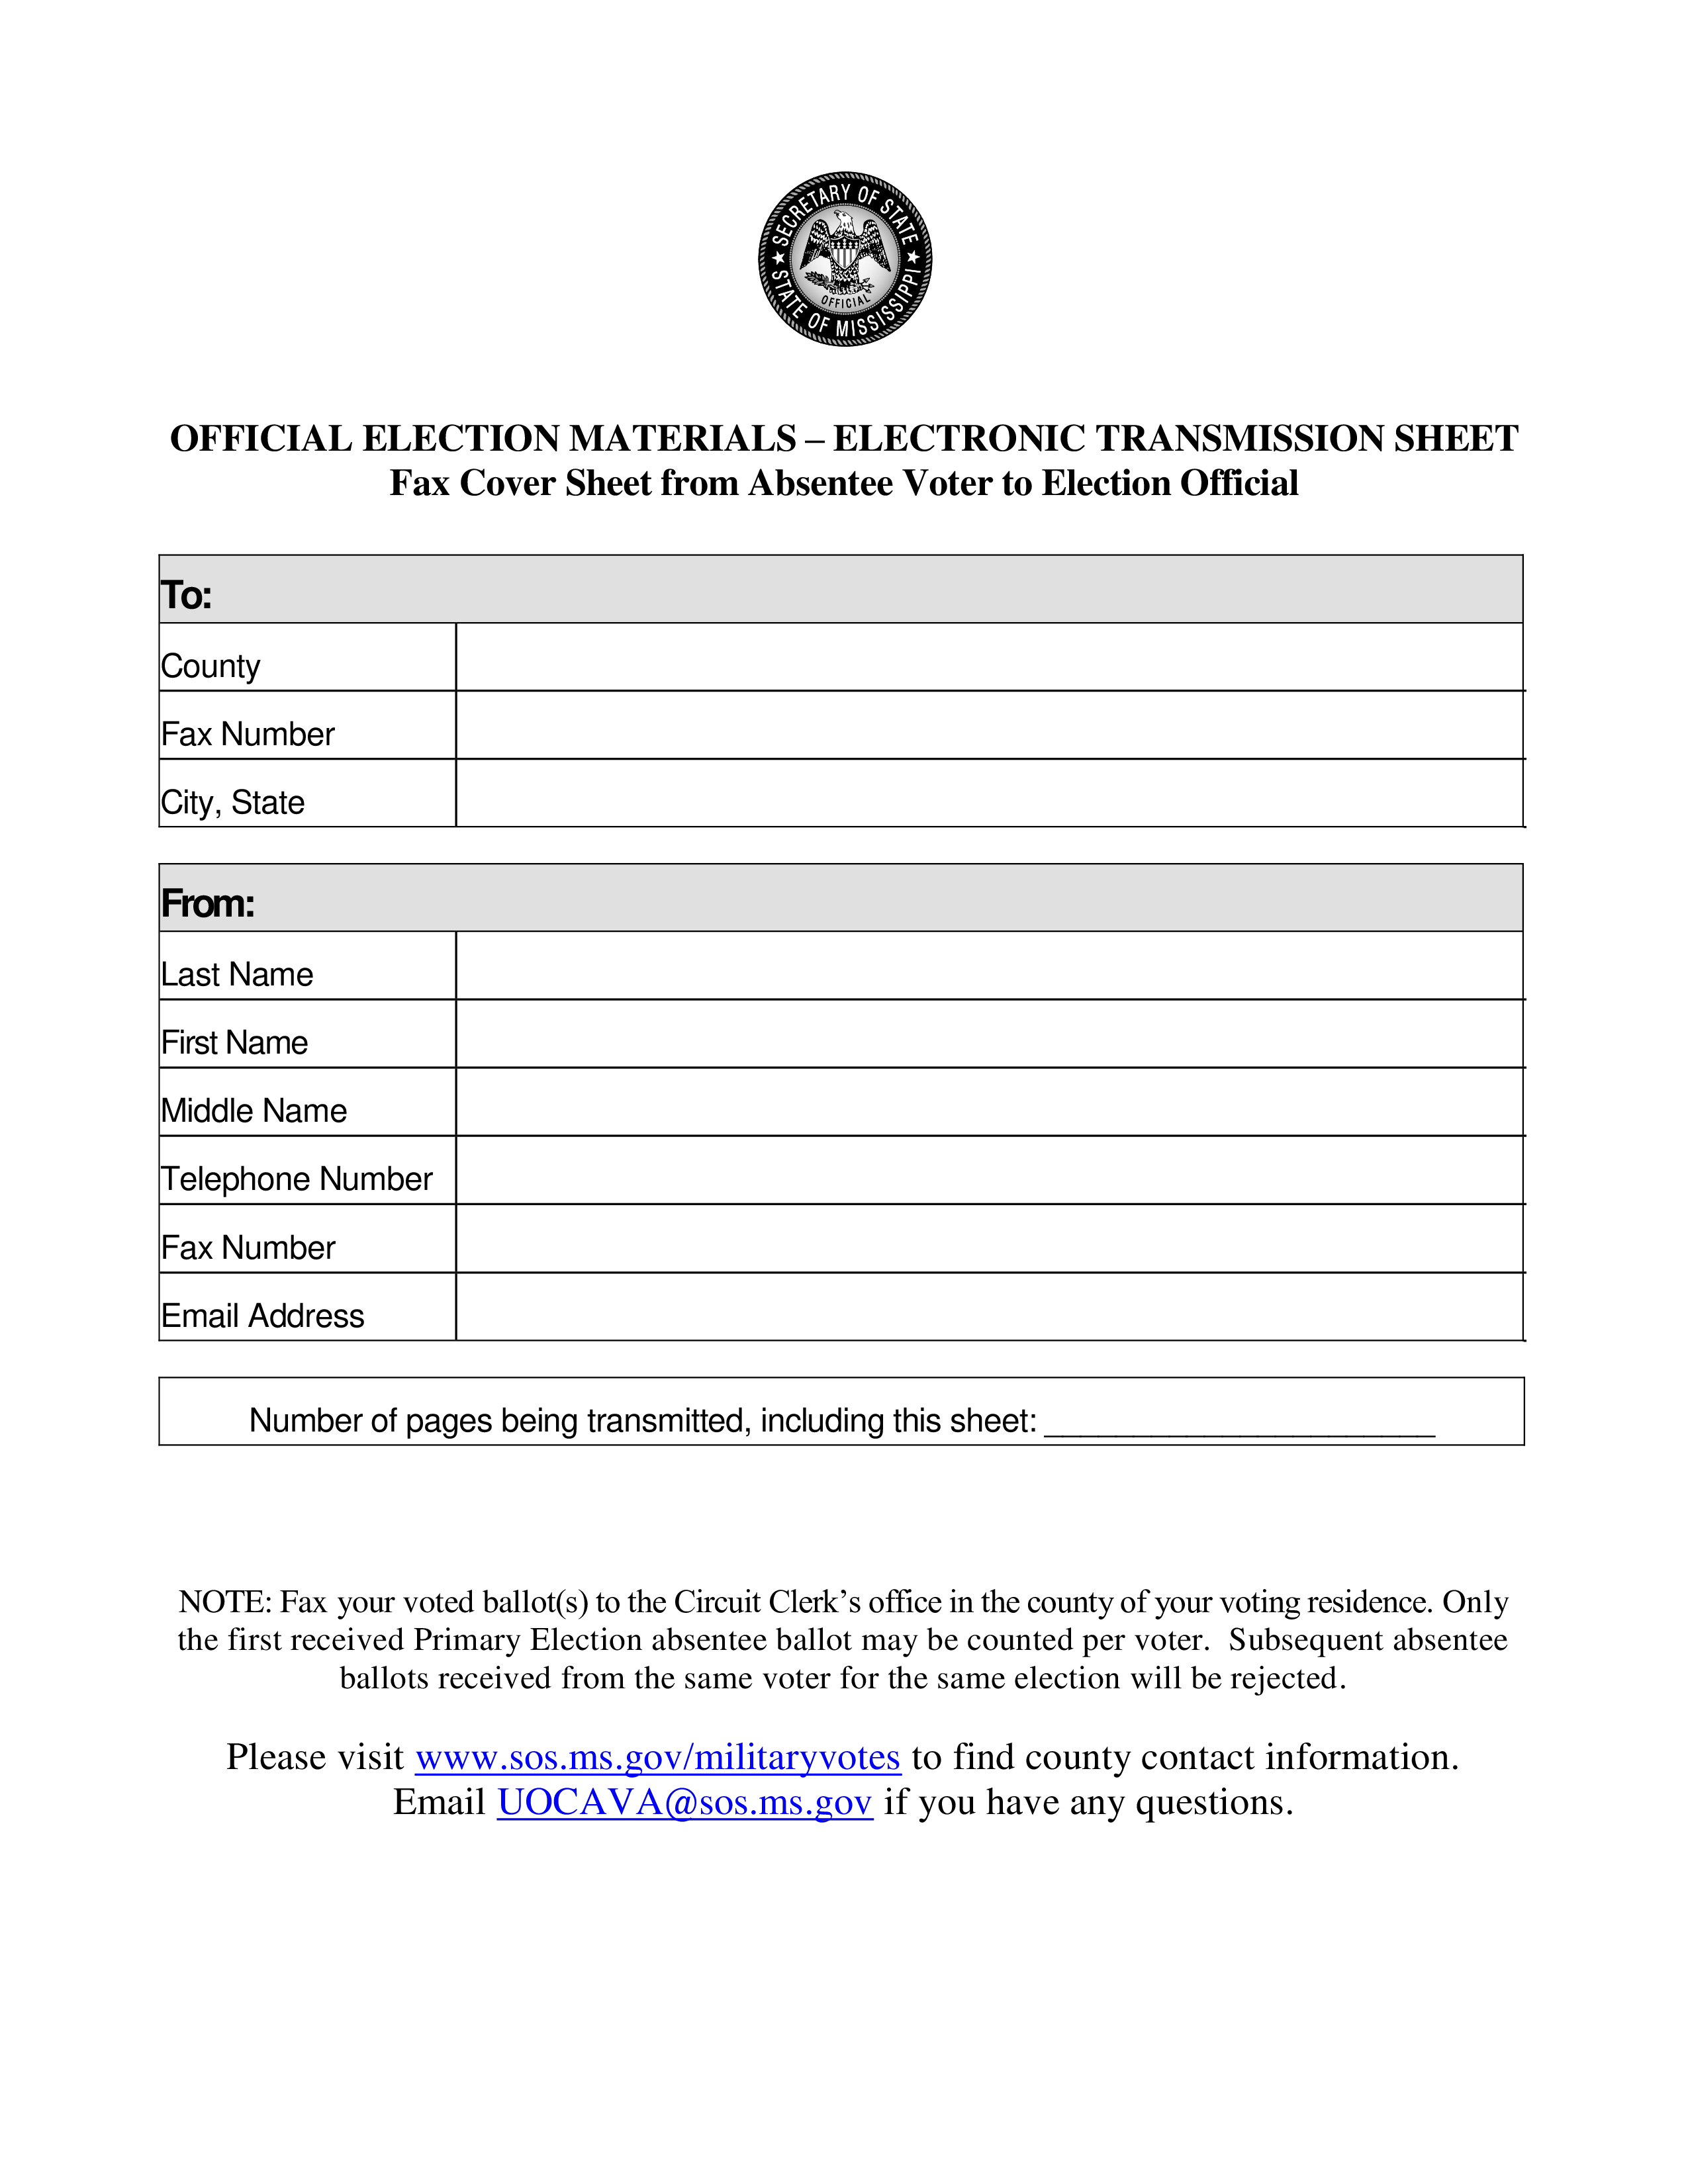 election materials fax cover sheet voorbeeld afbeelding 